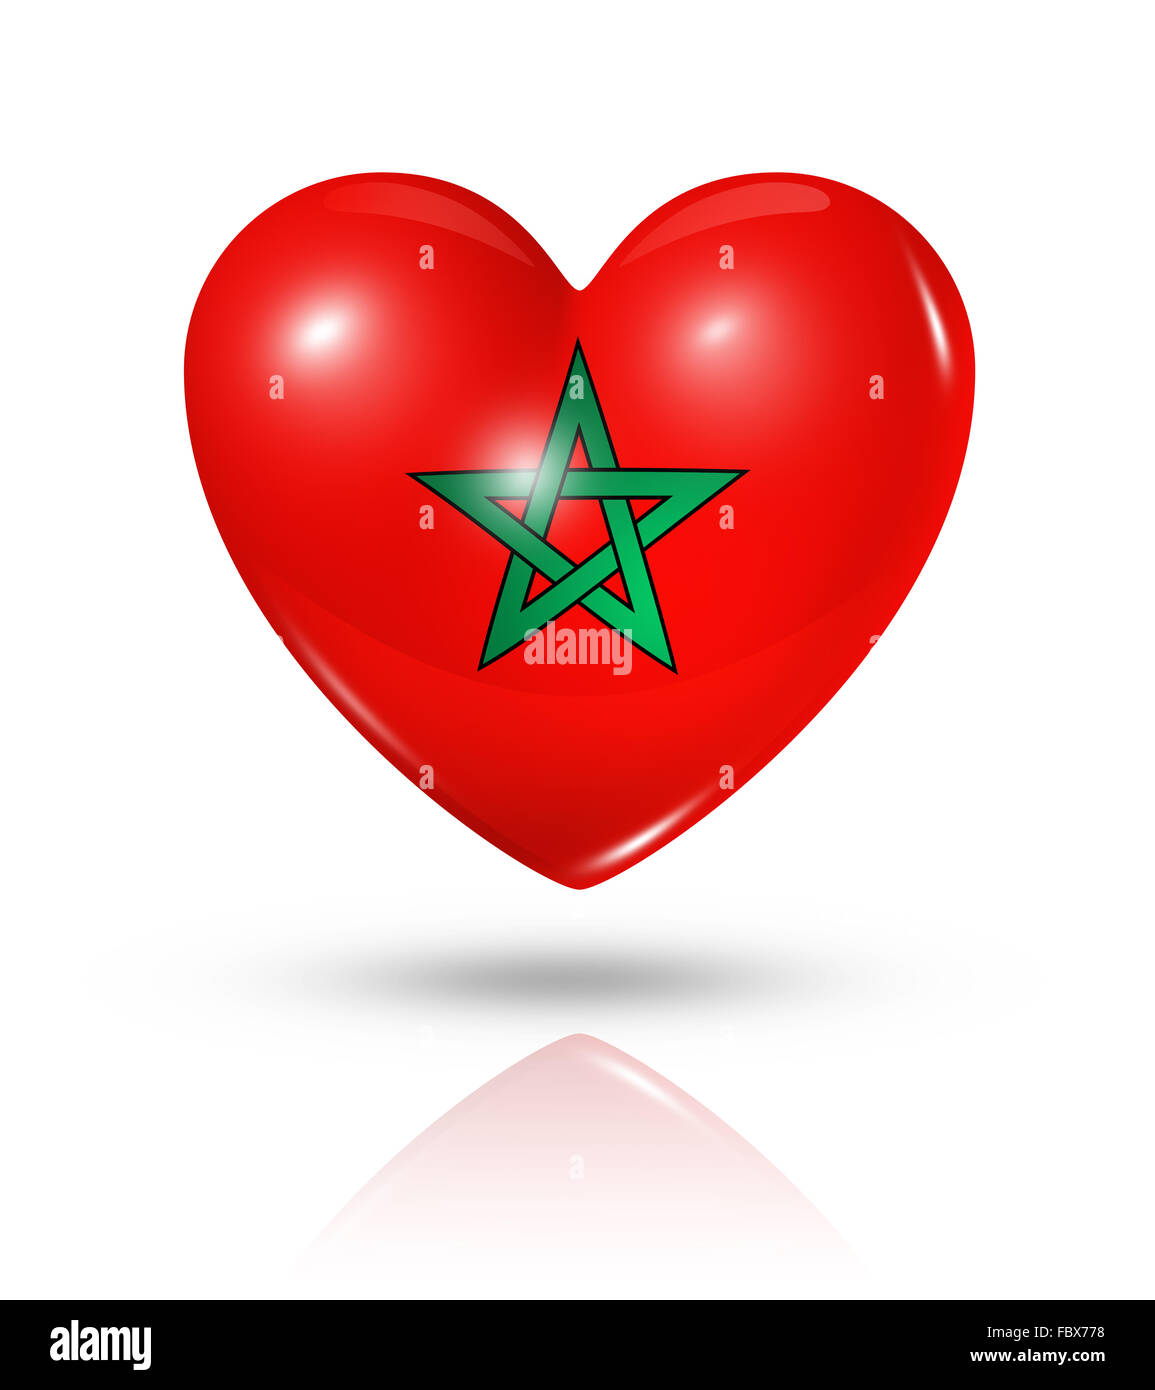 Bandiera Marocco  Bandera de marruecos, Fotos de miami, Imagenes de  banderas